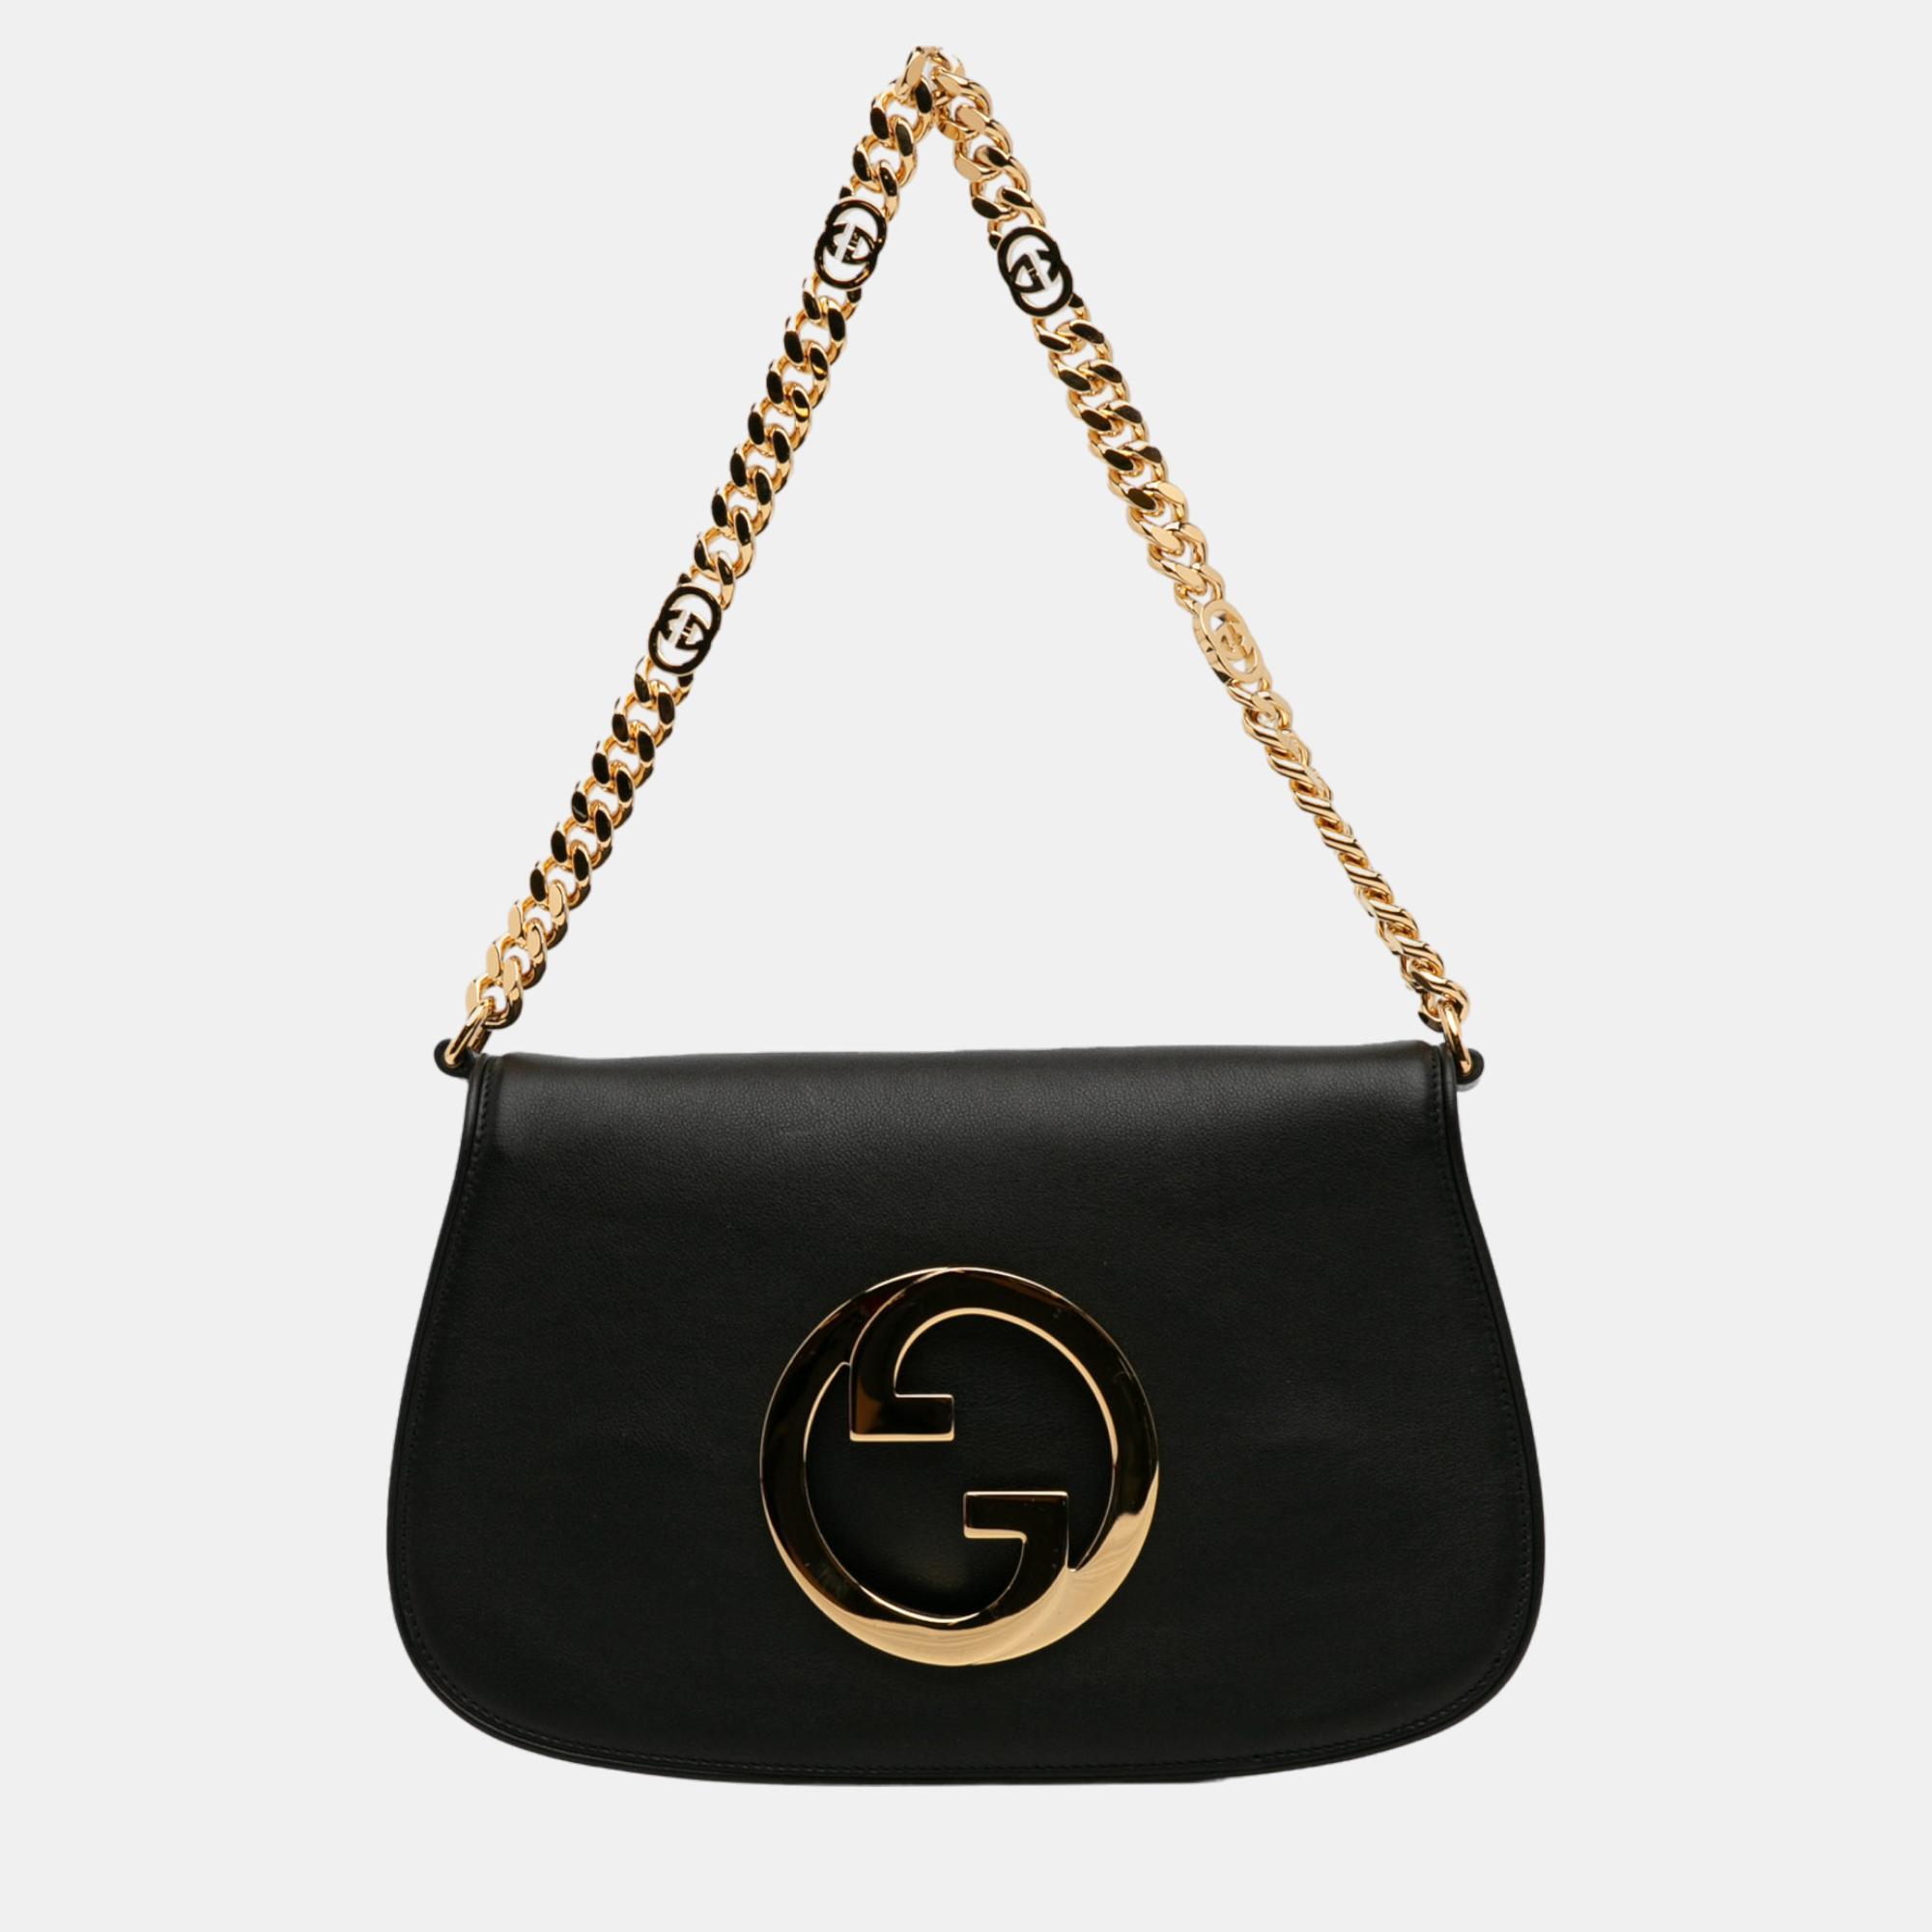 Gucci black blondie chain satchel